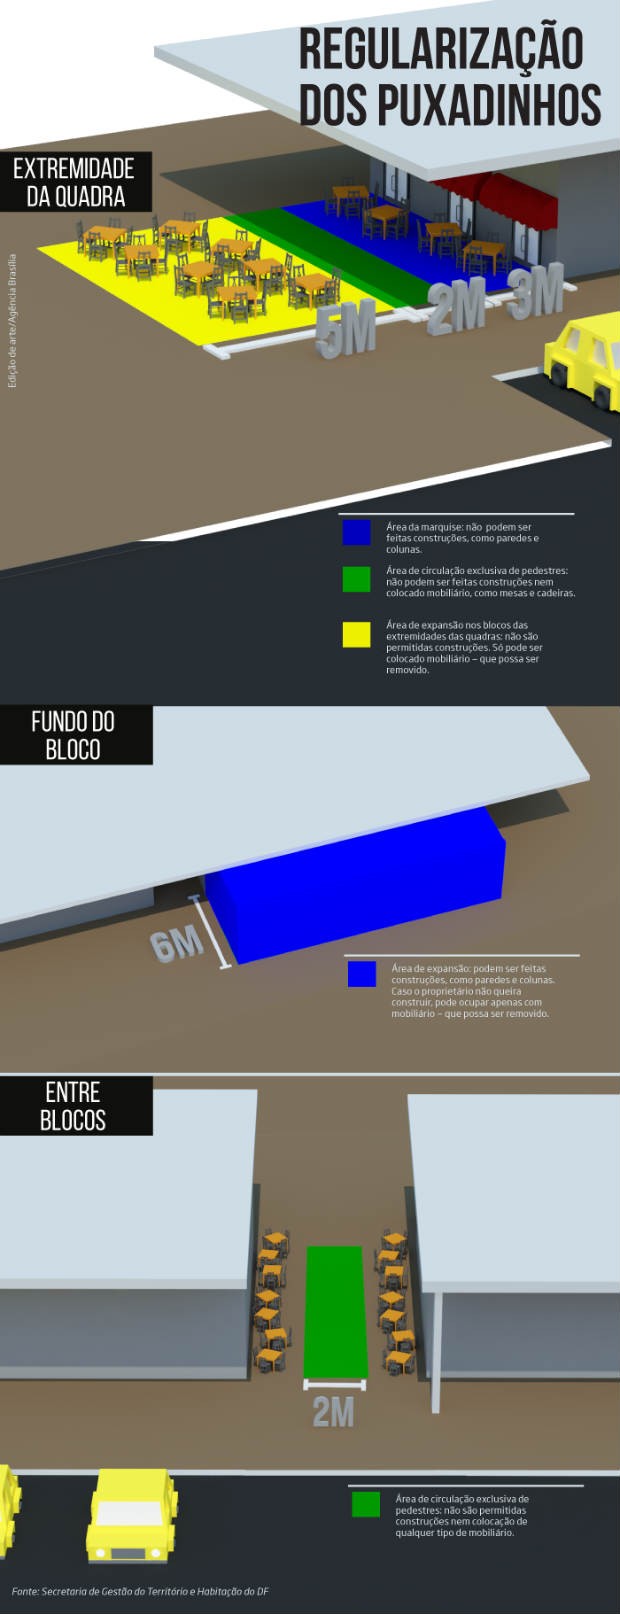 Infográfico mostra novas regras sugeridas para puxadinhos na Asa Sul, em Brasília (Foto: GDF/Reprodução)